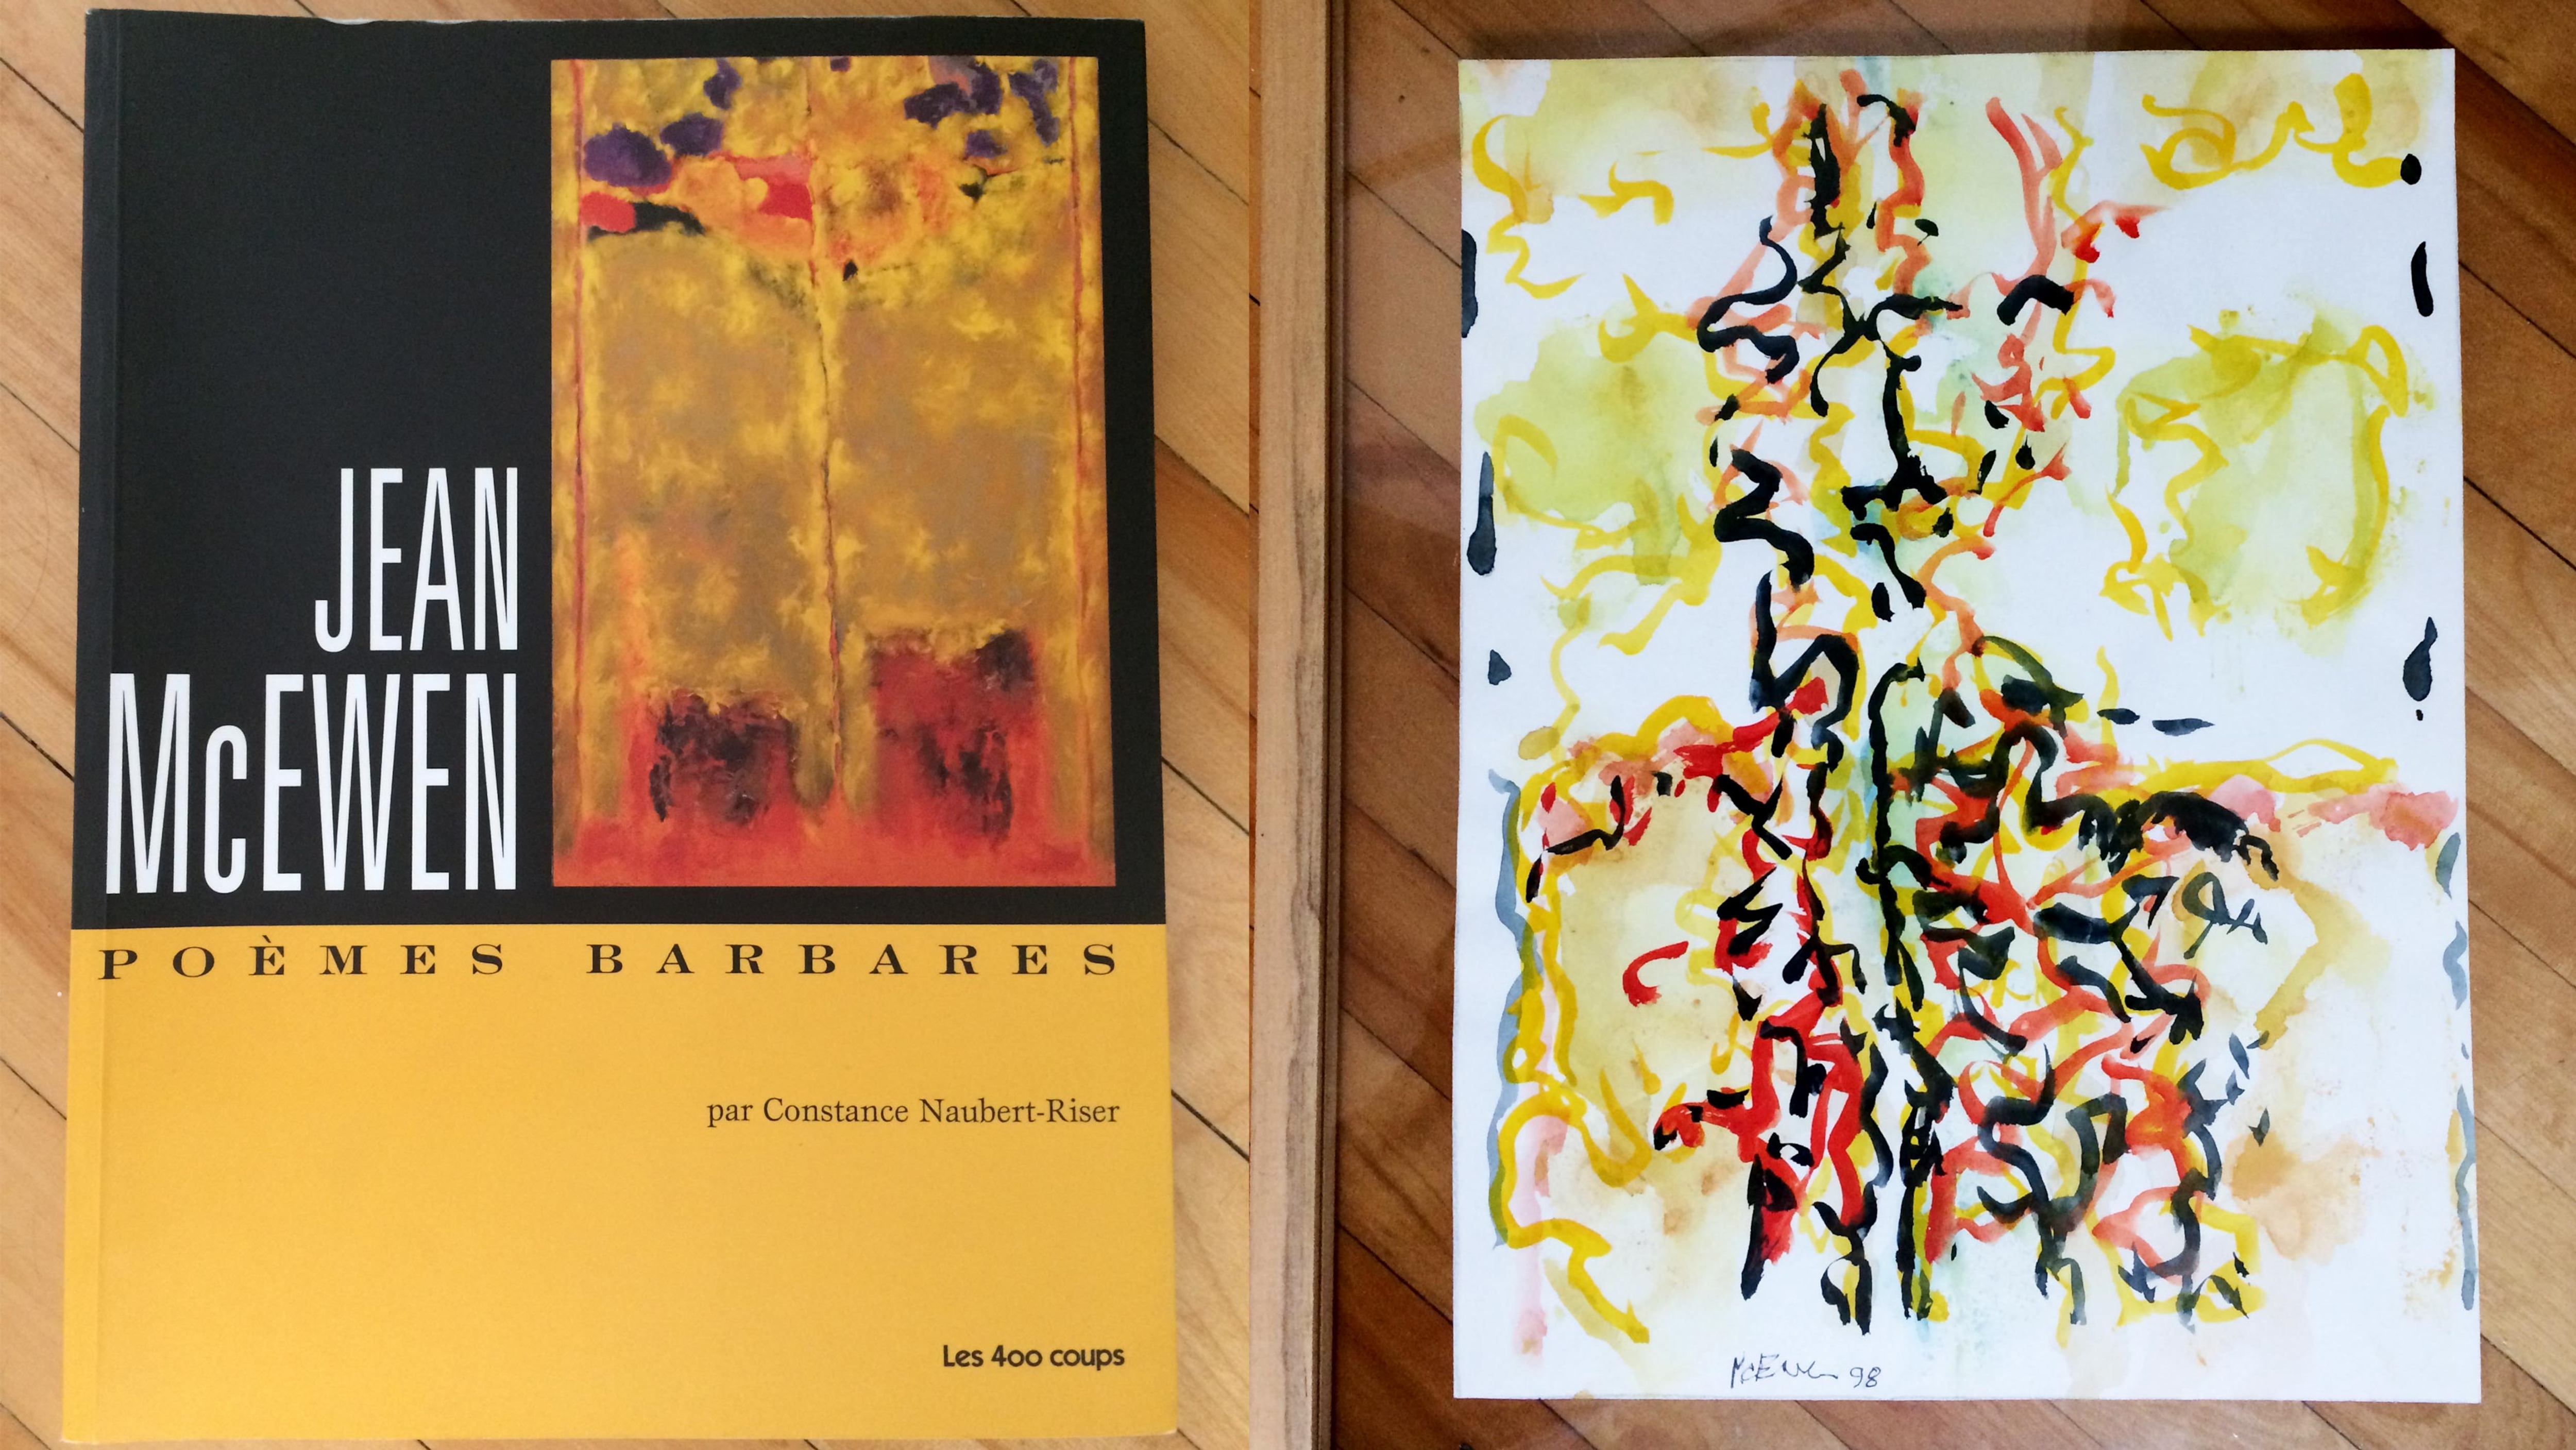 À gauche : la couverture du livre « Poèmes barbares » par Constance Naubert-Riser. À droite : l'aquarelle peinte par Jean McEwen pour son fils, Jérémie McEwen.  